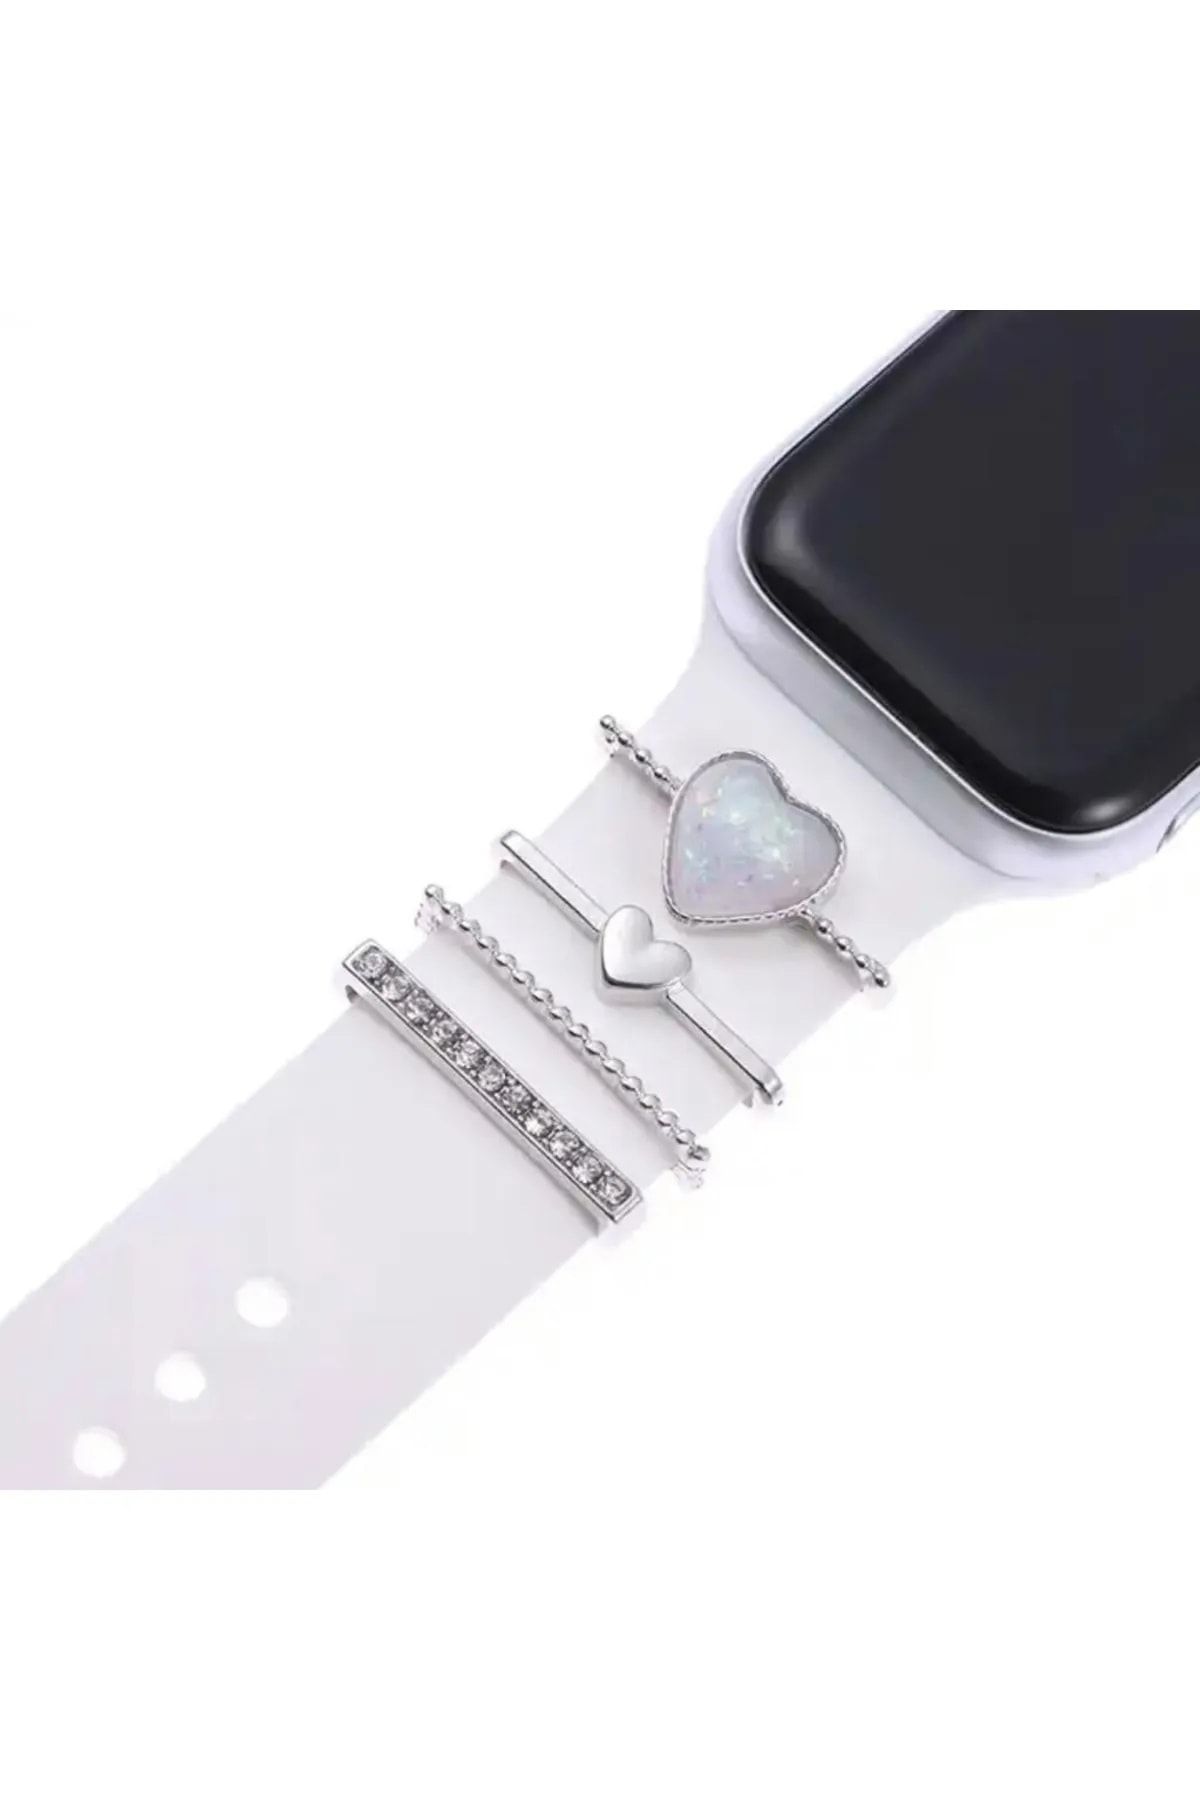 Tagomoon Apple Watch Serisi Uyumlu Kordon Süsü - Inci Kalp Charm